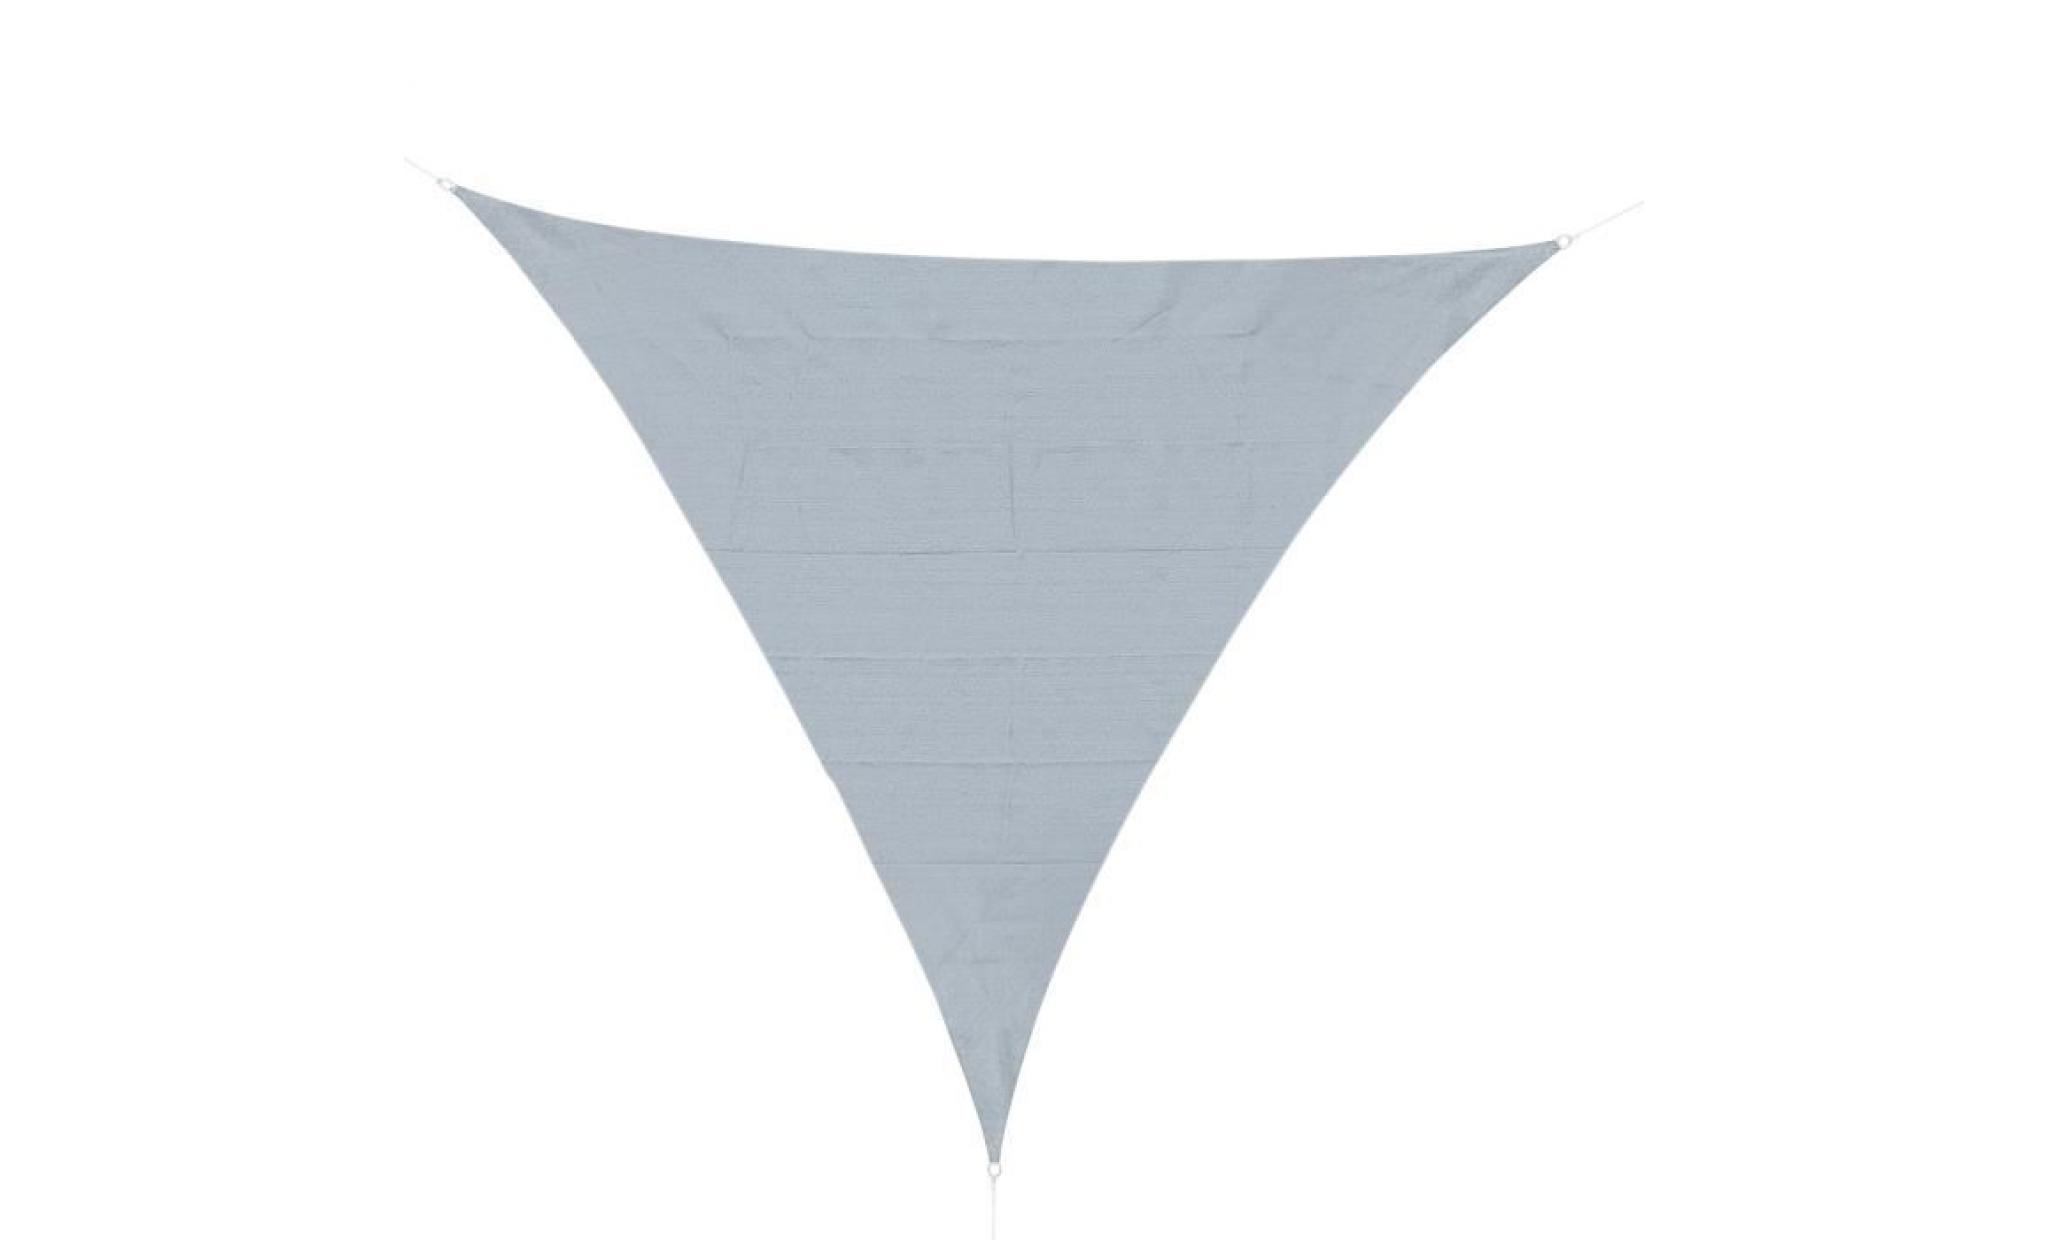 voile d'ombrage triangulaire grande taille 6 x 6 x 6 m polyester imperméabilisé haute densité 160 g/m² gris clair 600x600x1cm gris